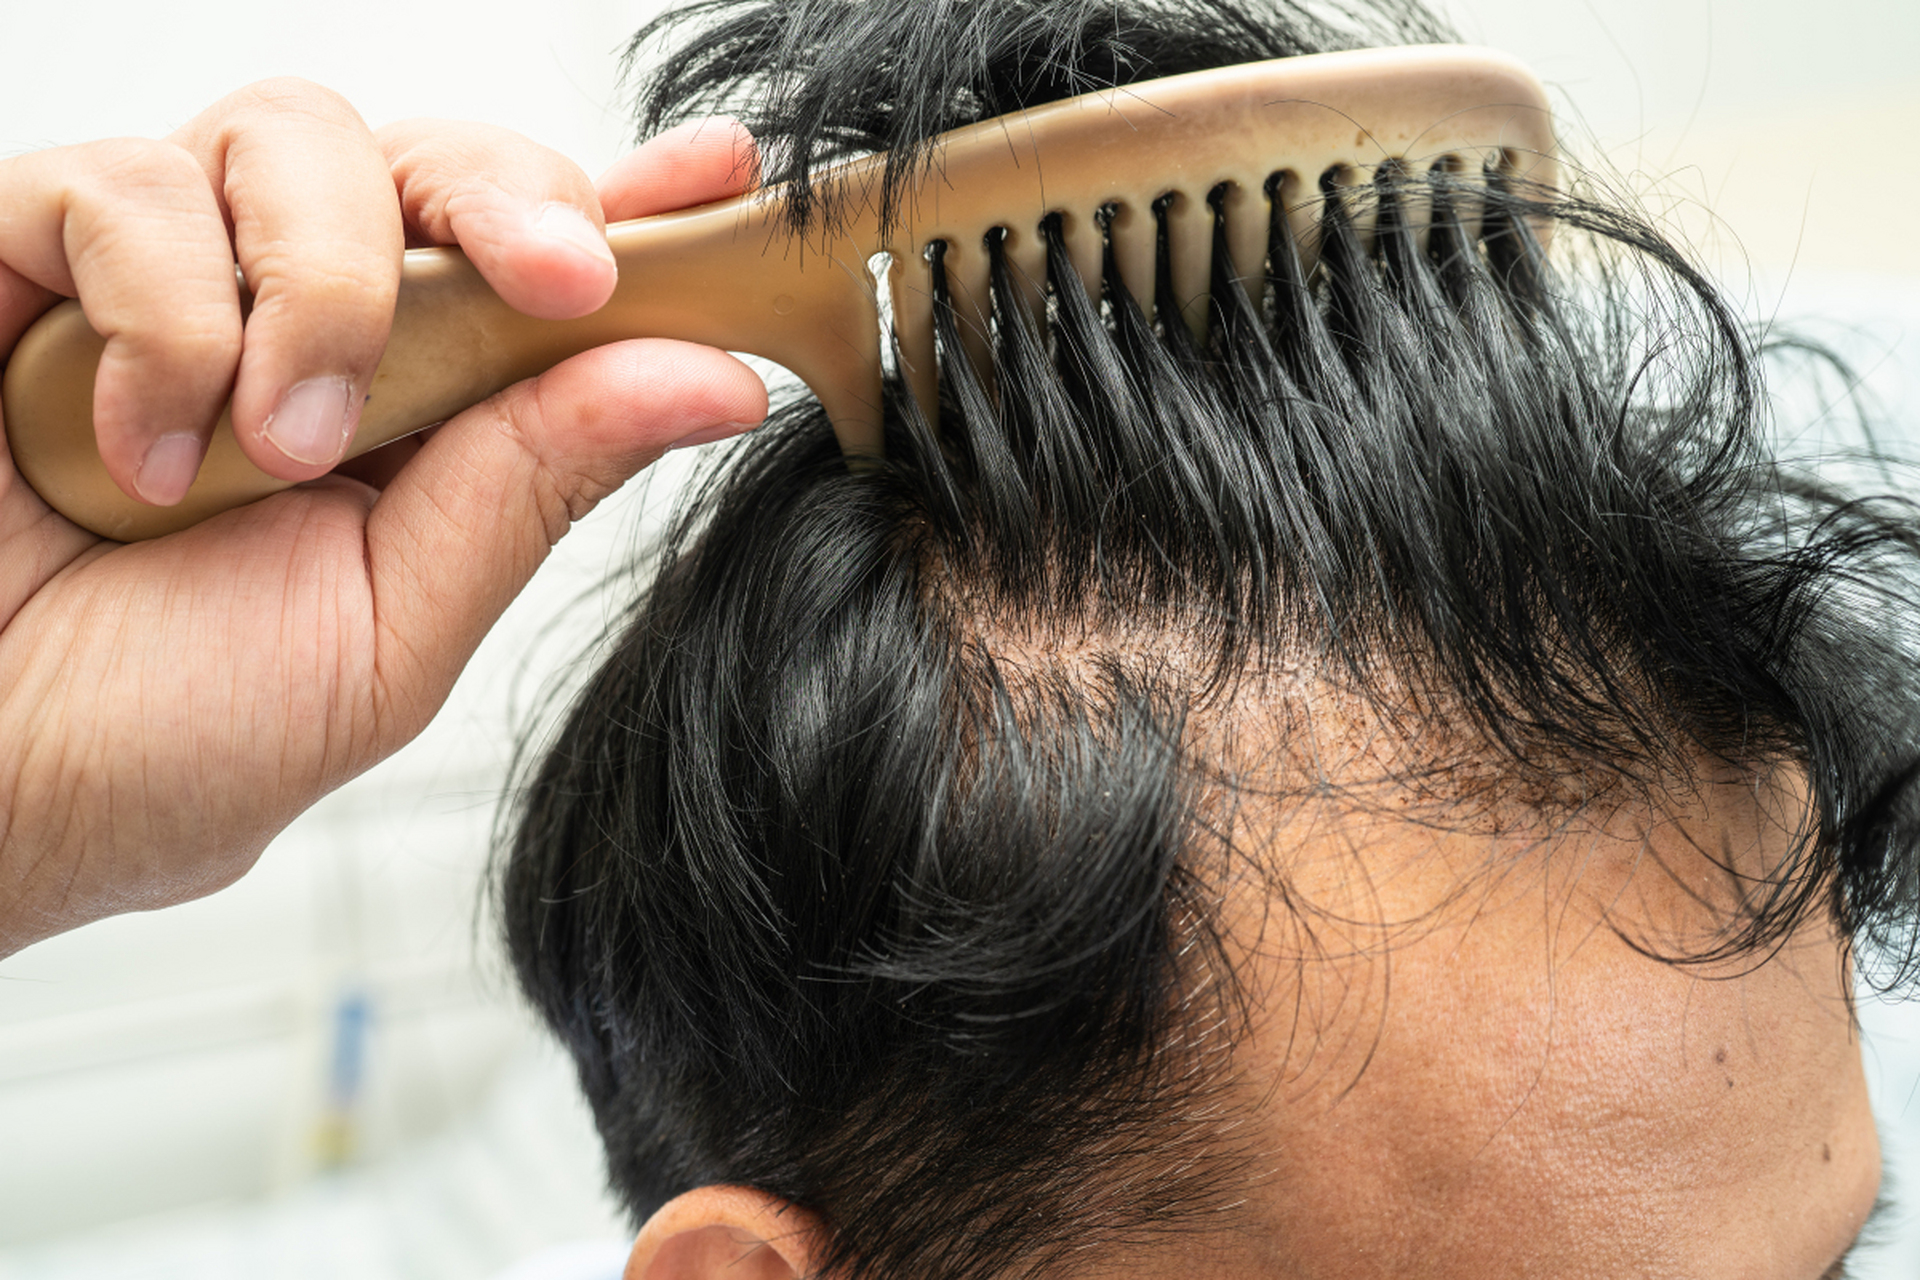 m型脱发也称为男性脱发,是男性雄激素性脱发中最常见的的一种敛床